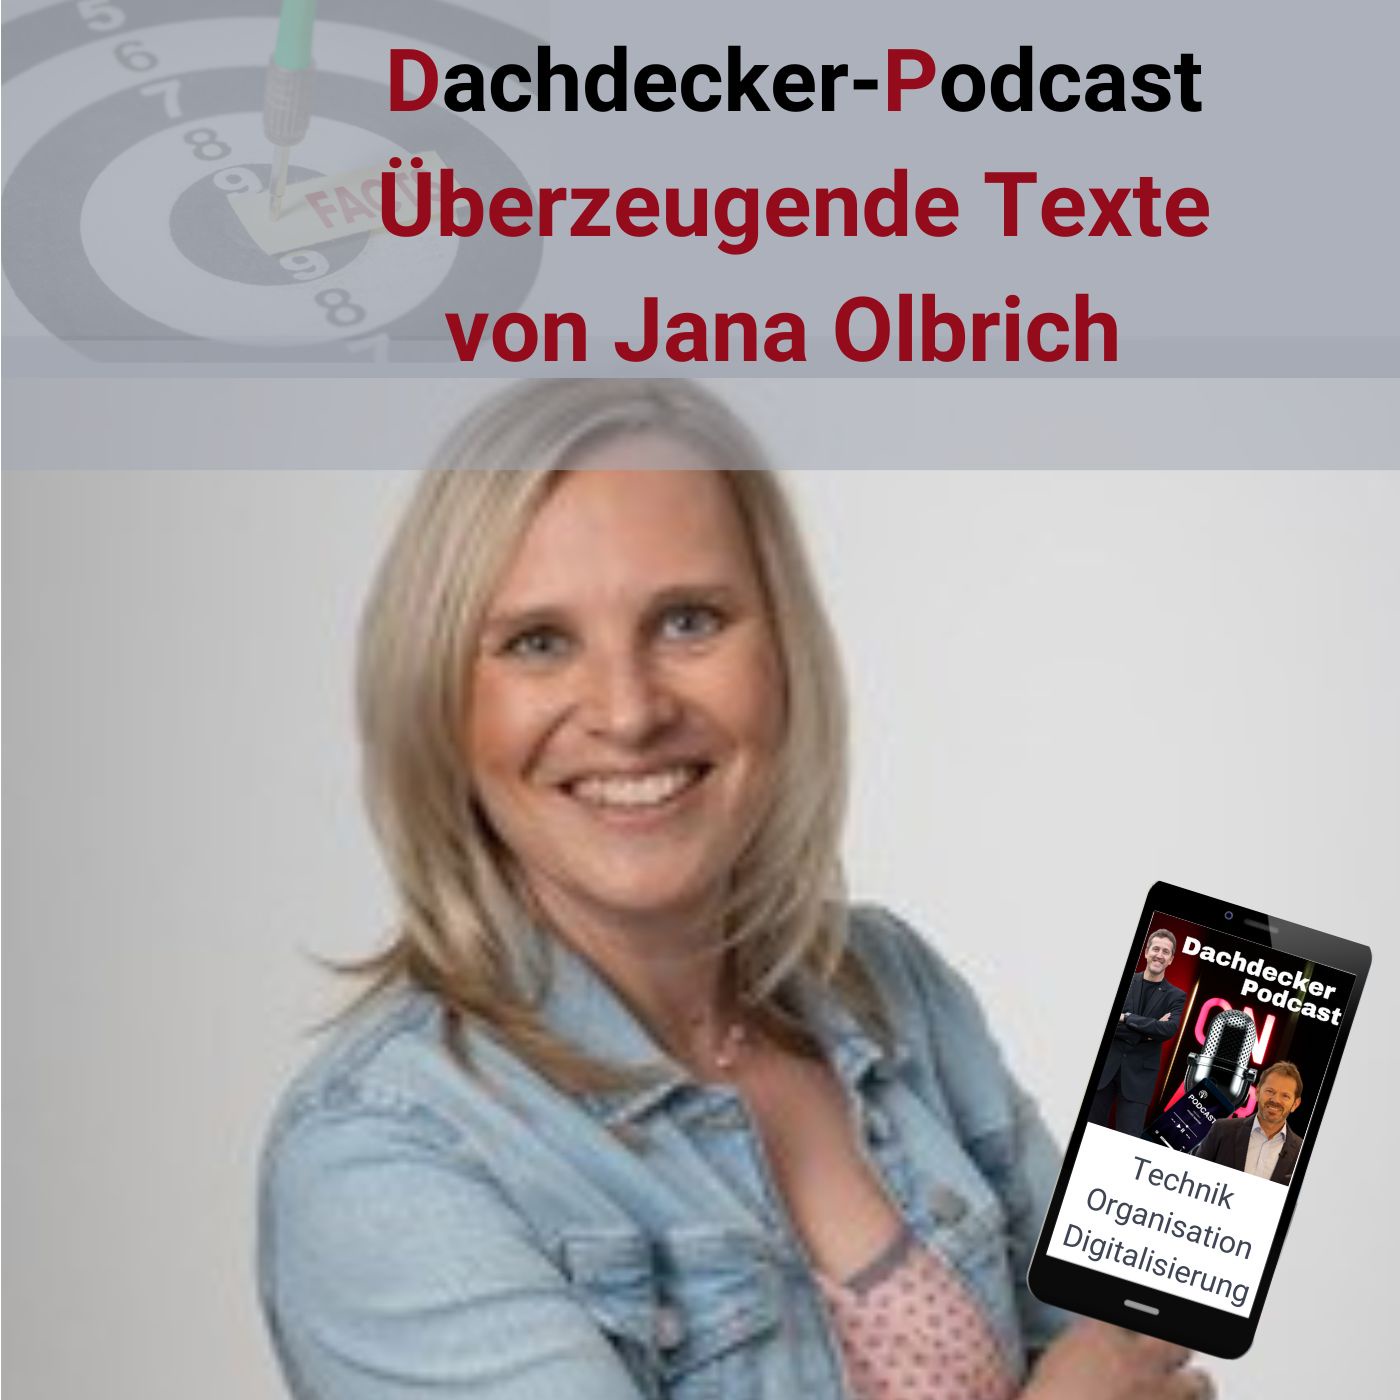 Fantextisch.com – Jana Olbrich